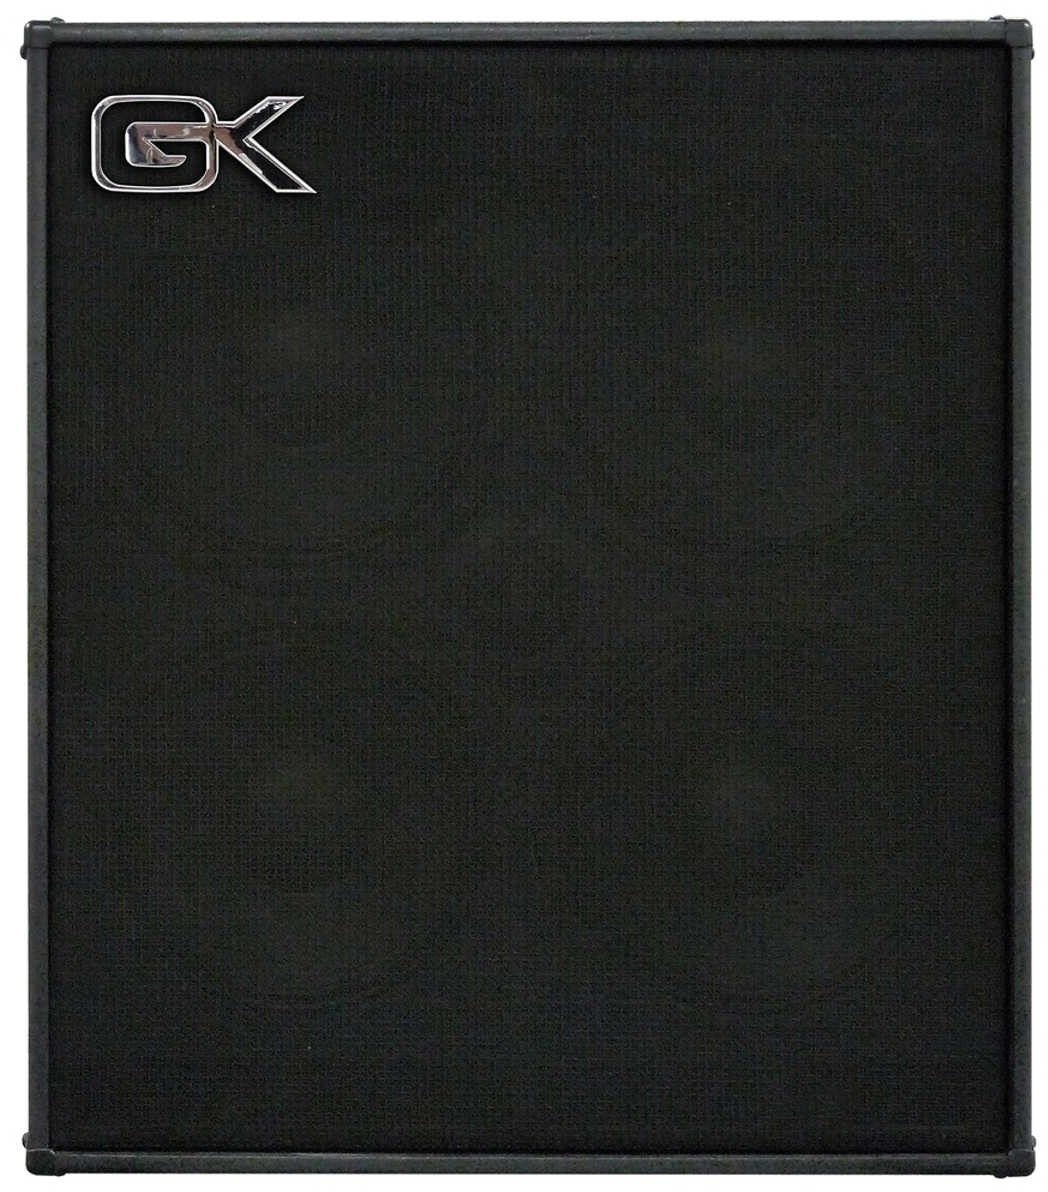 Bass Cabinet Gallien Krueger CX-410 8 Ohm